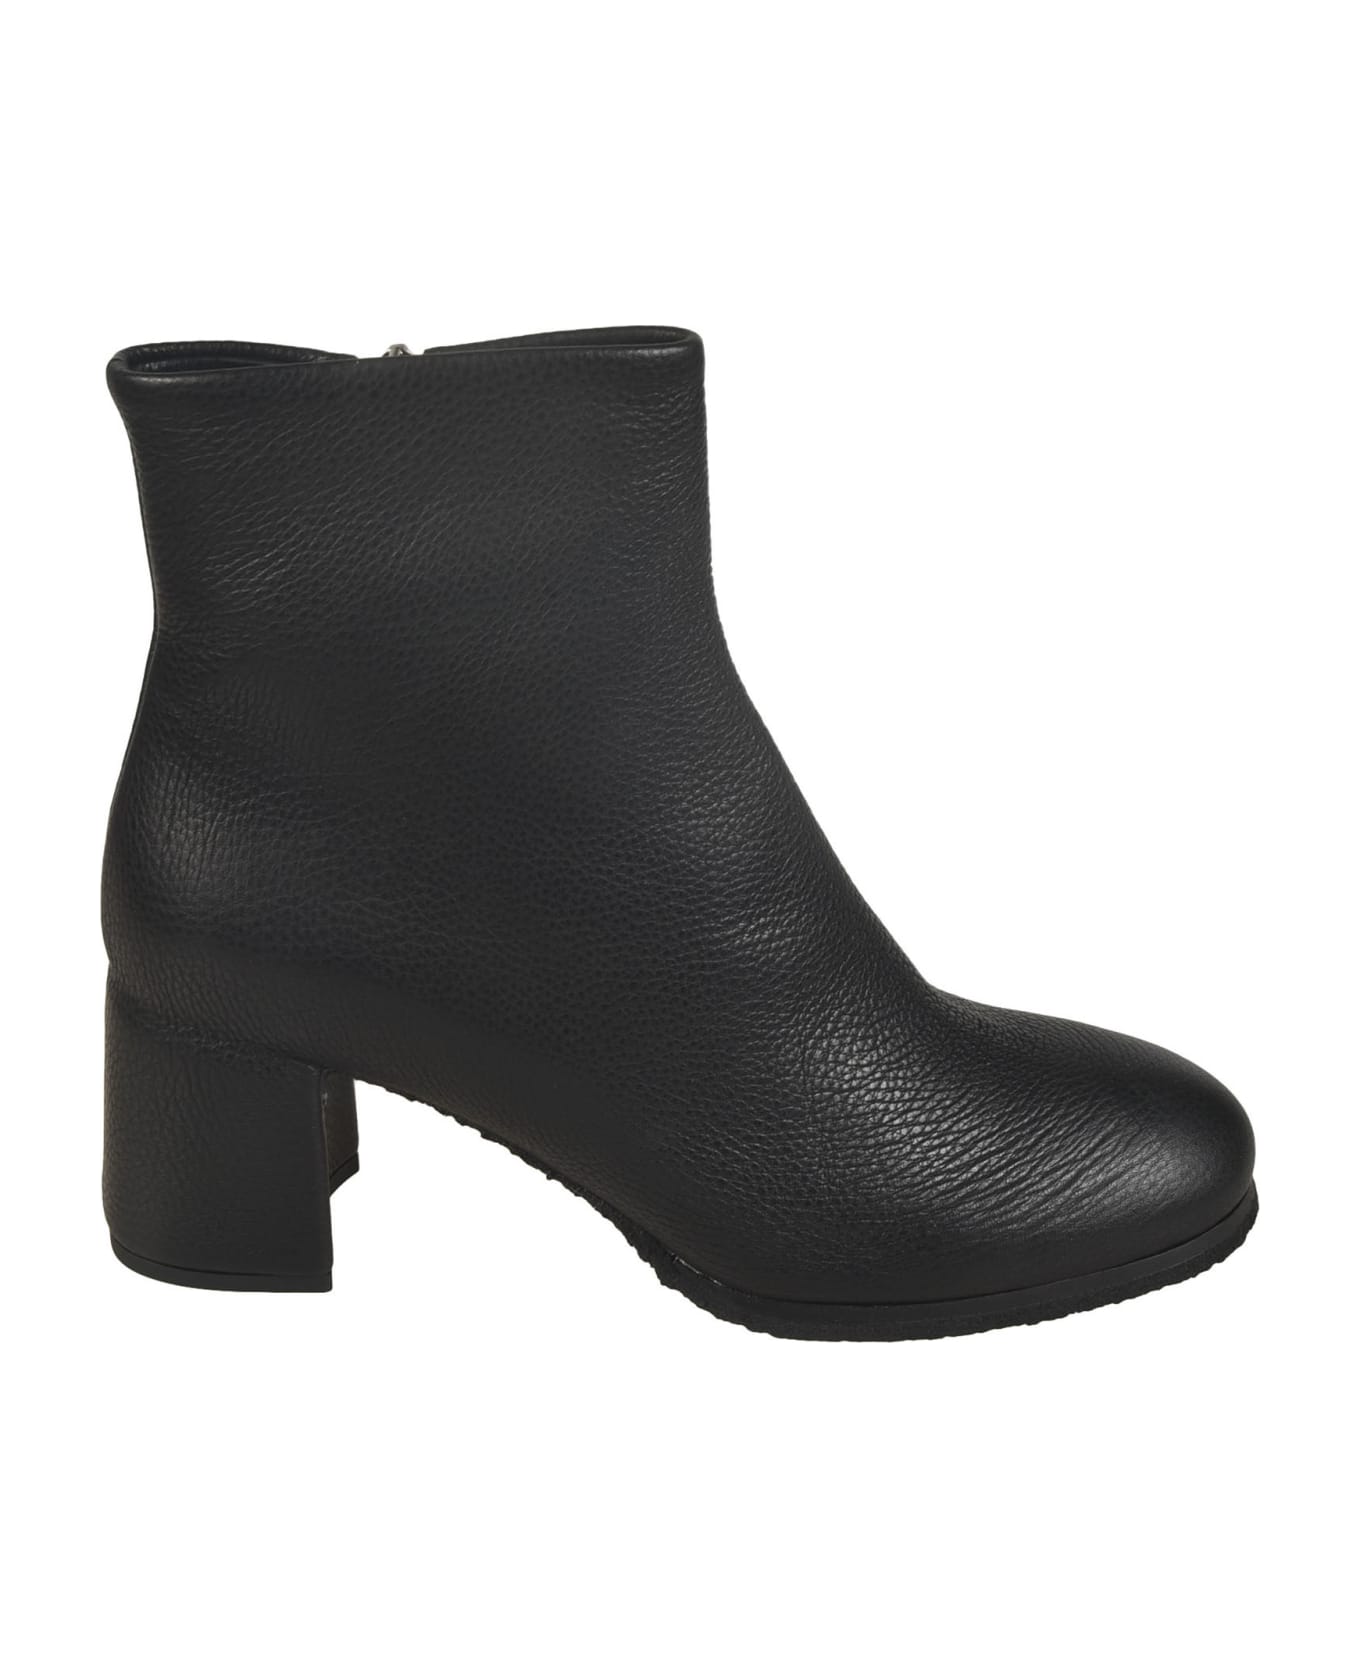 Del Carlo Side Zip Boots - Black